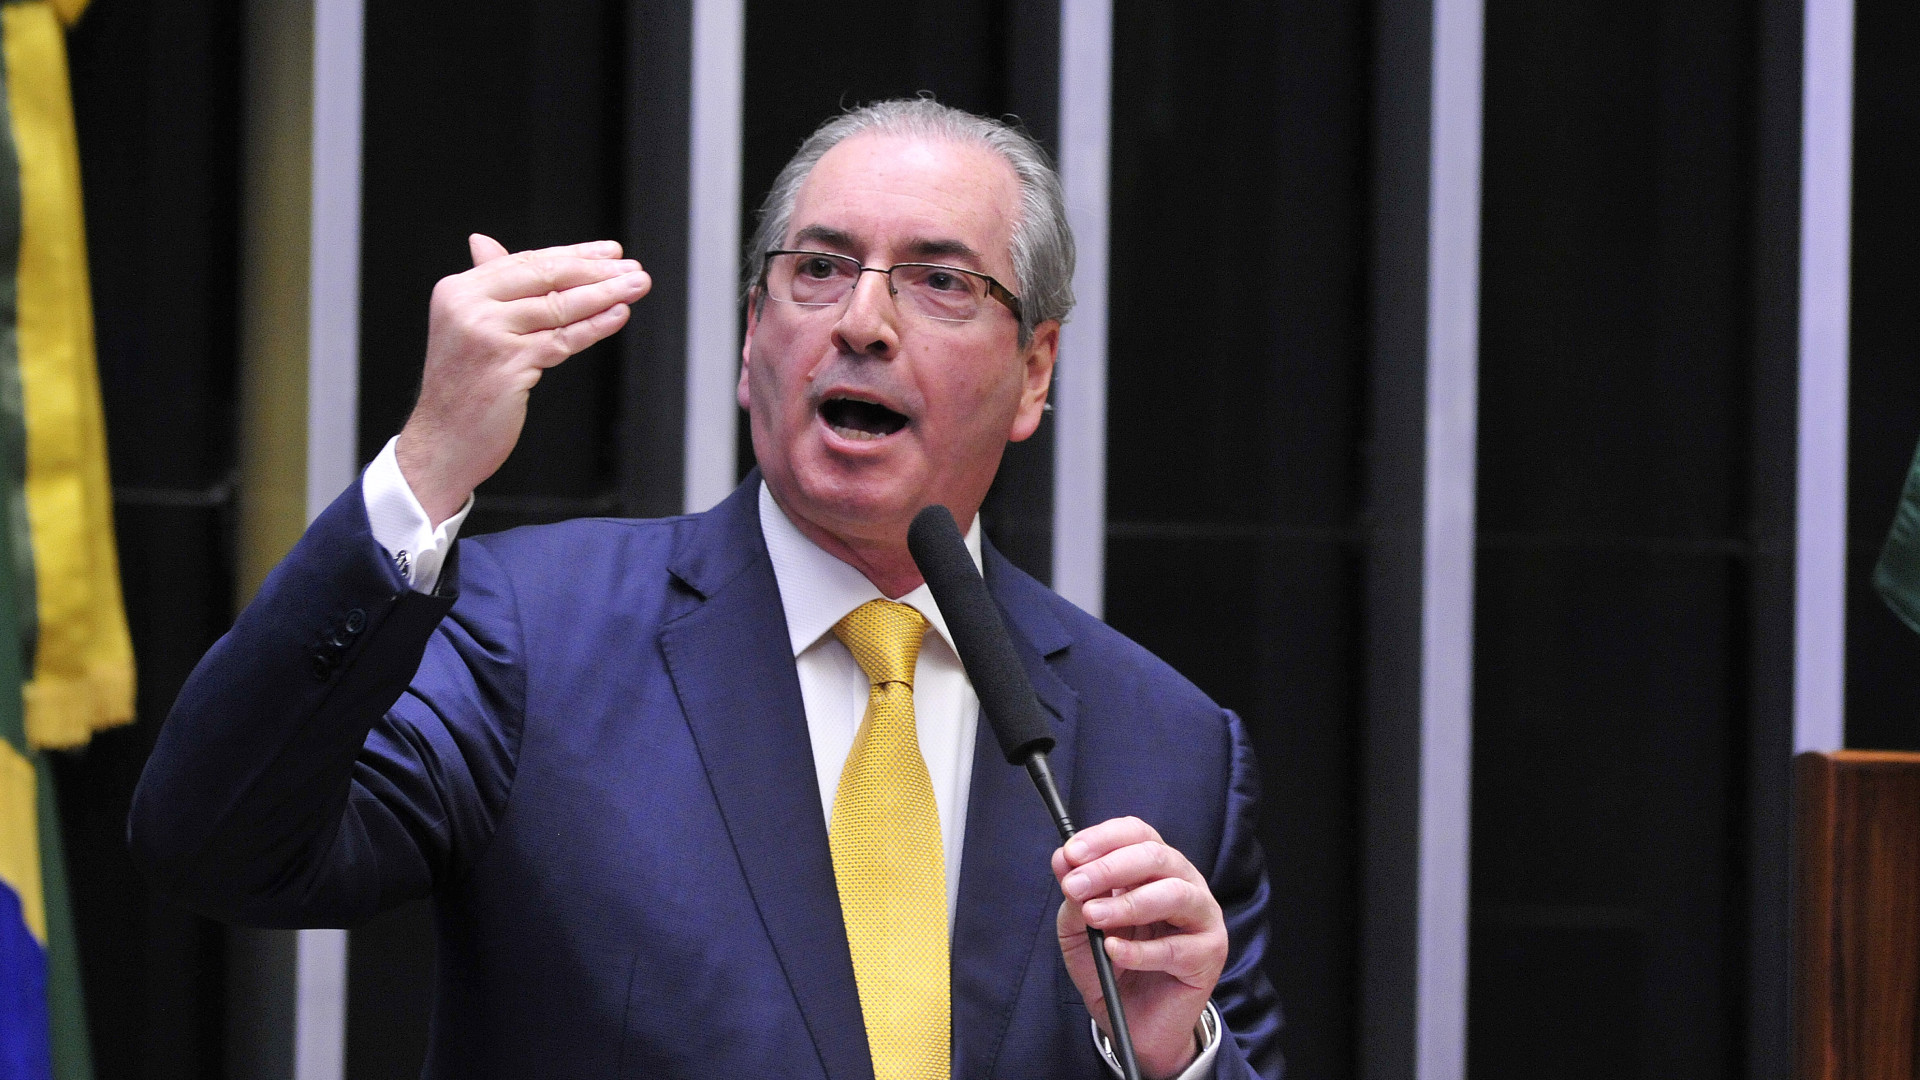 'Me julguem com isenção', chora
Cunha em plenário